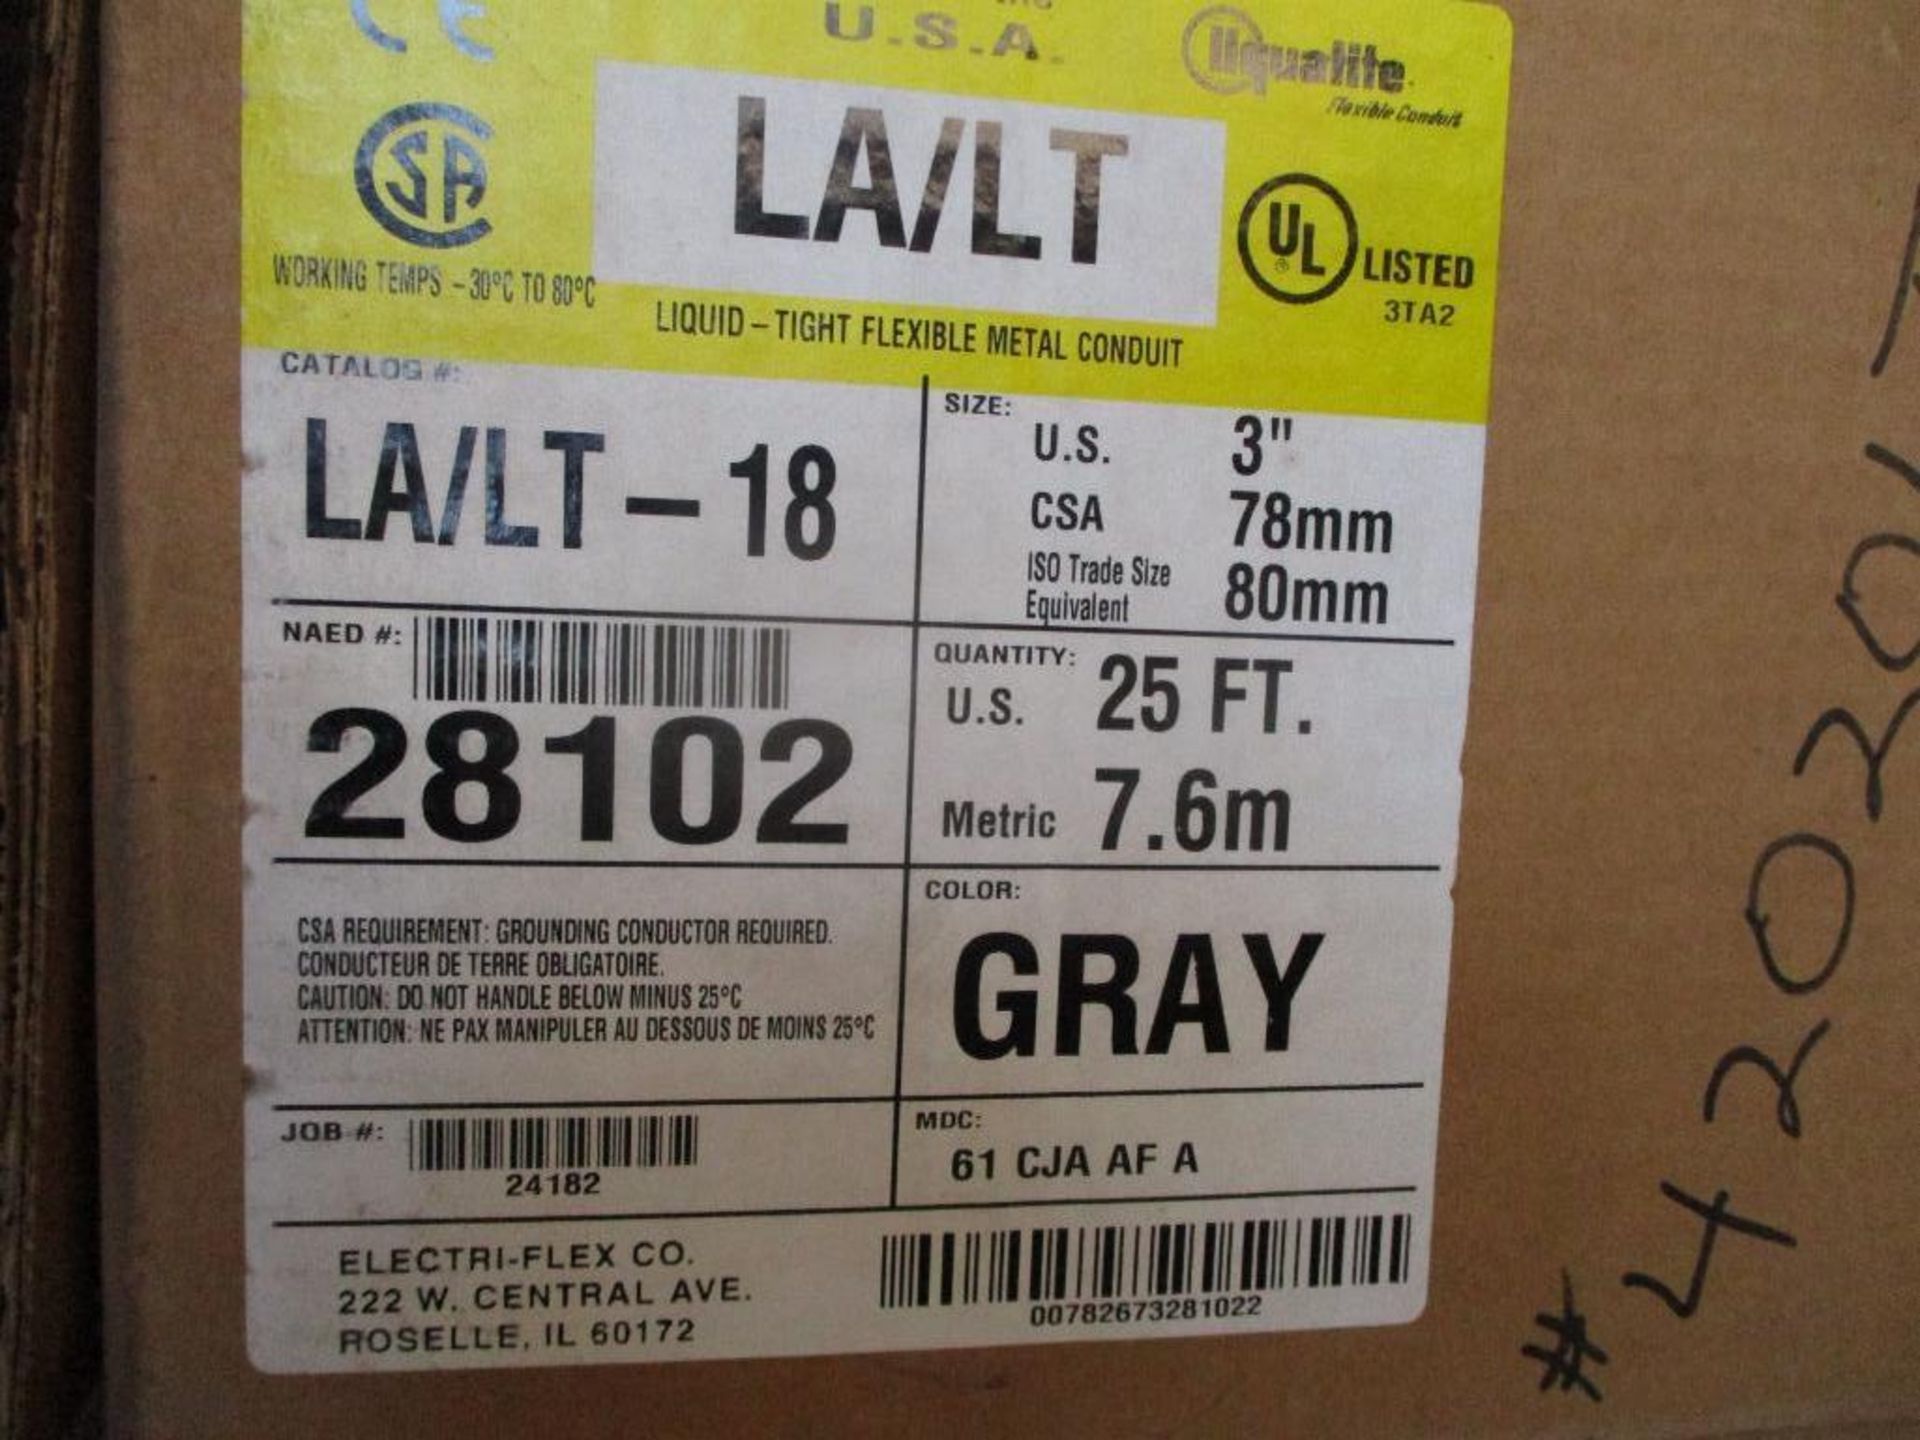 (5) Boxes of Liquatite 3" Flexible Metal Conduit, Gray, 25', Cat No. LA/LT-18 (New) - Image 2 of 4